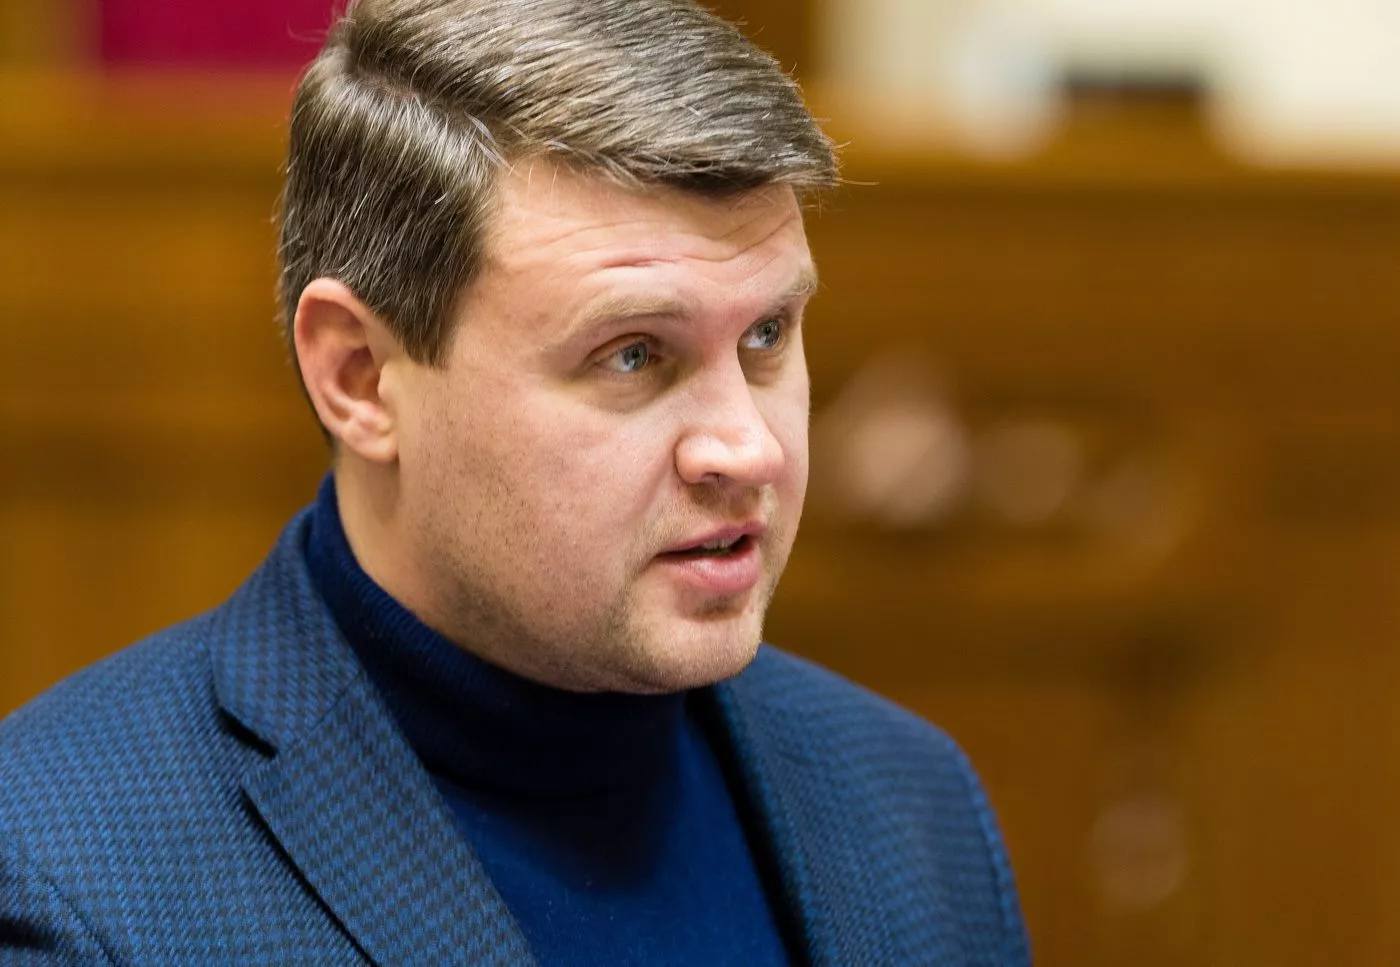 Вадим Івченко: "Наші ідеологічні позиції не збігаються"